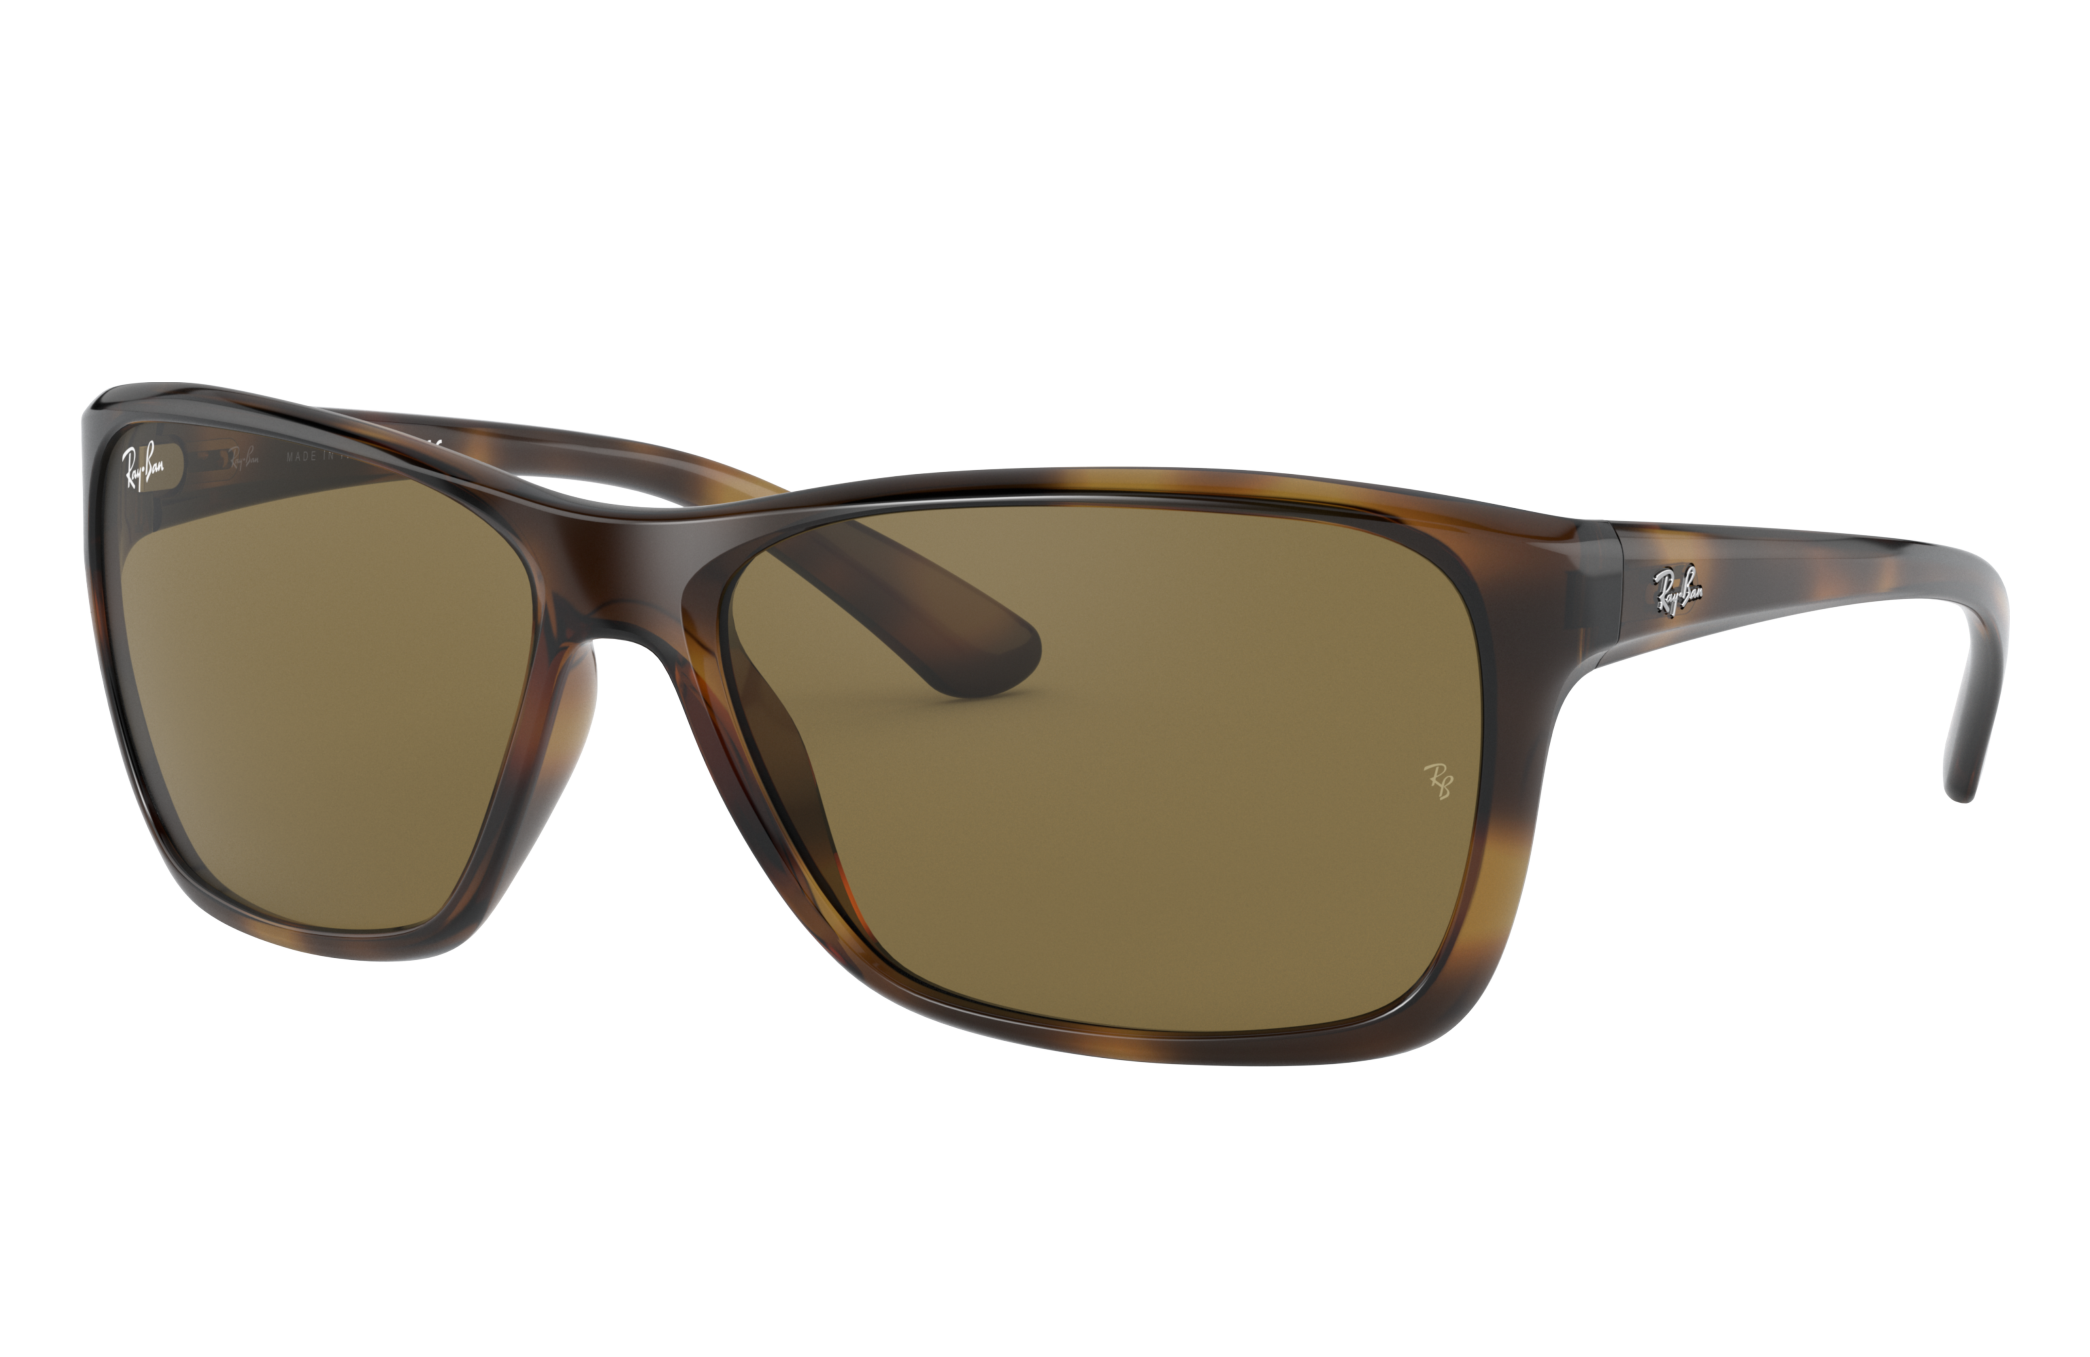 Ray Ban Rb4331 Sunglasses Tortoise Frame Brown Lenses 61-24